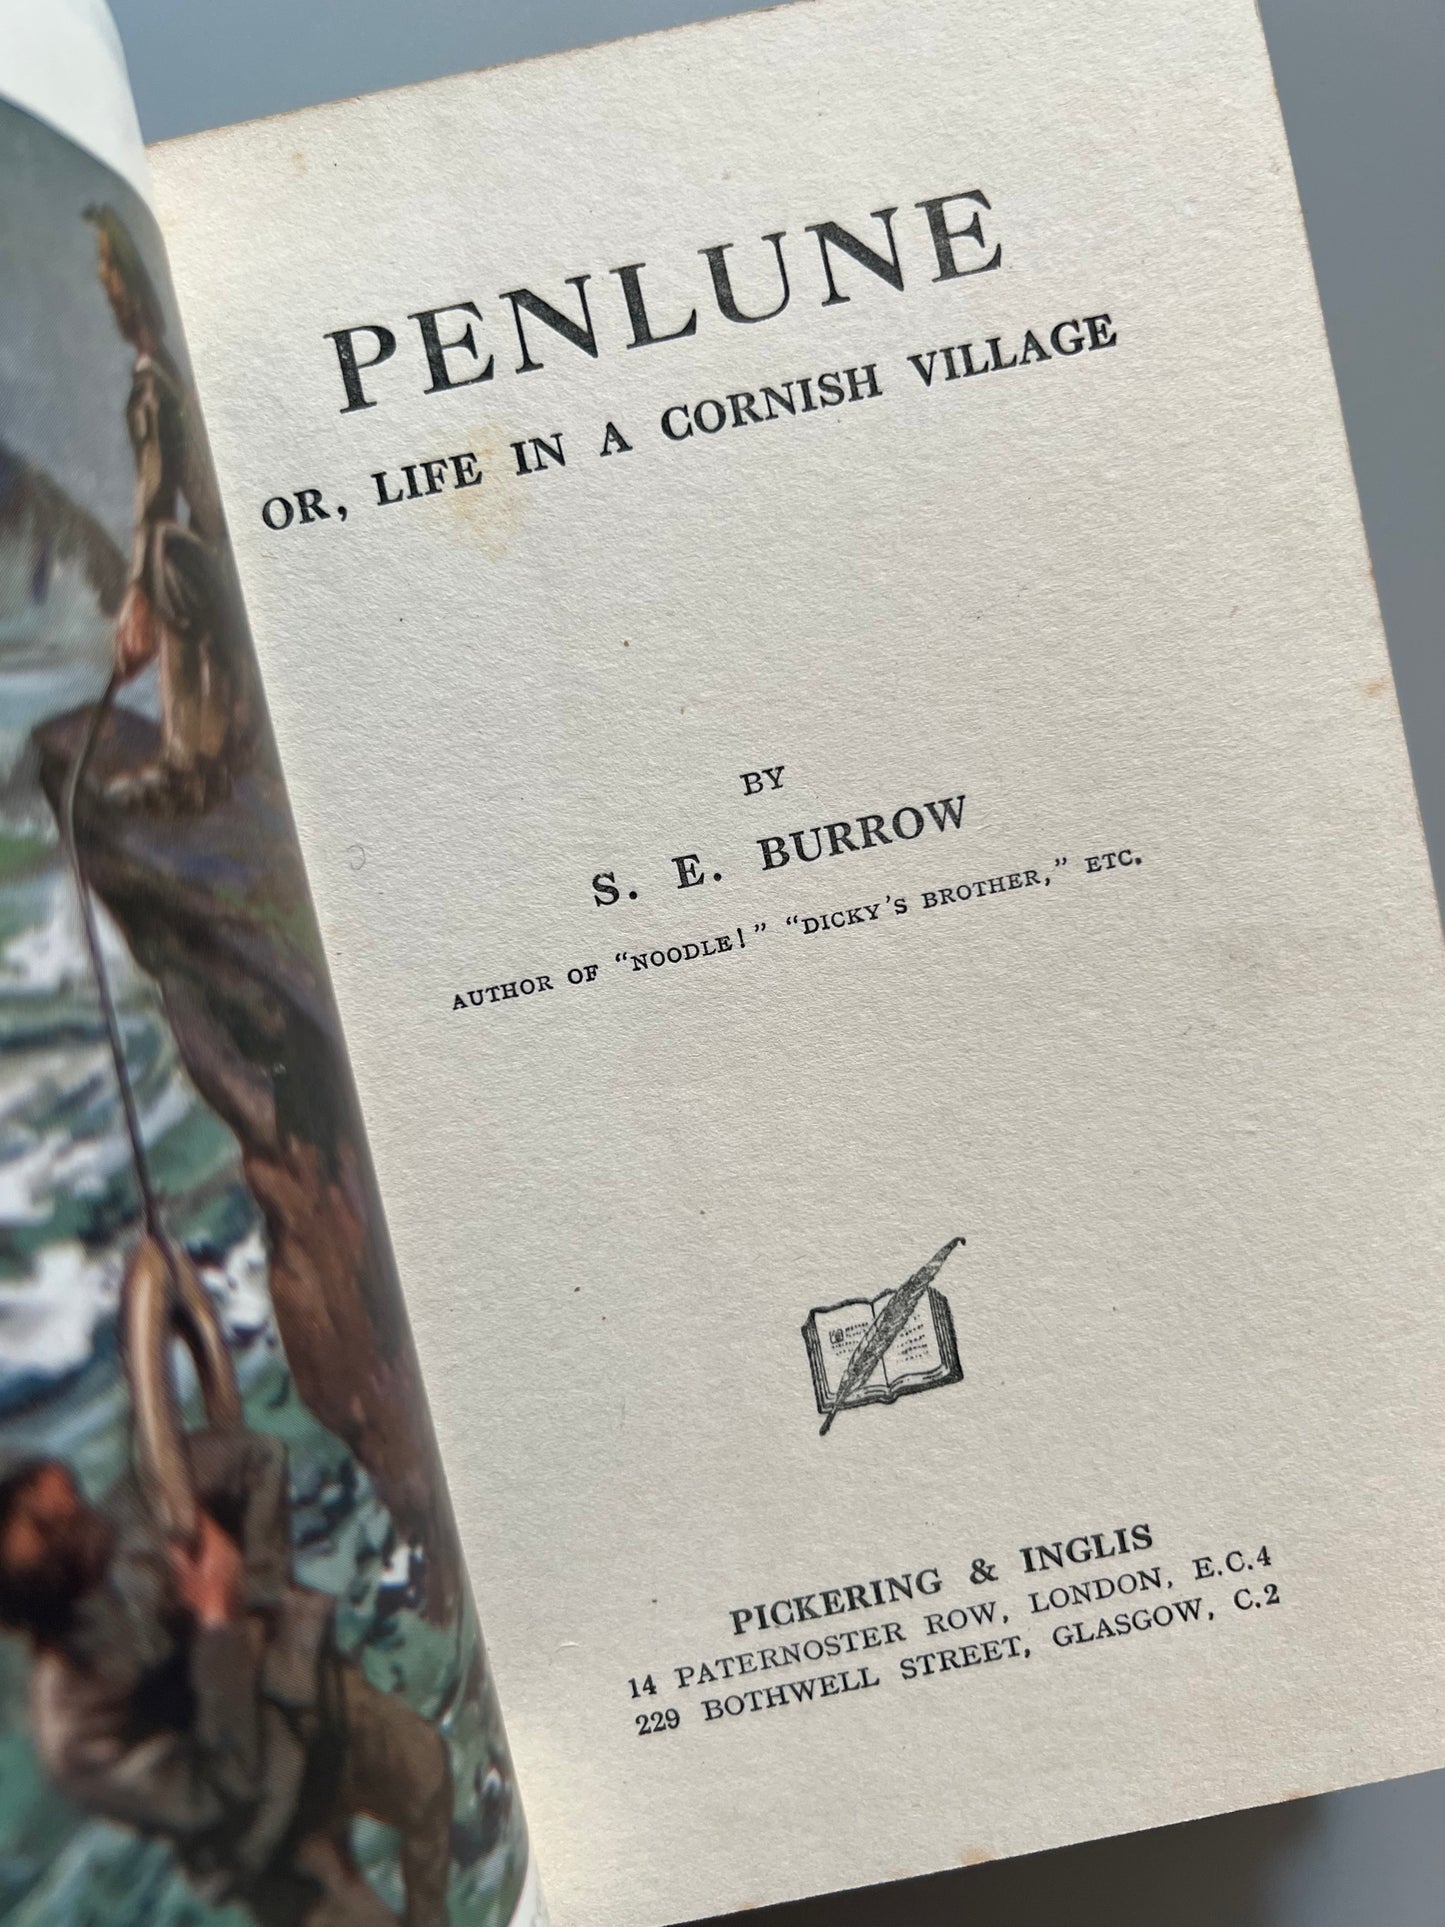 Plenlune or life in a cornish village, S. E. Burrow - Pickering & Inglis, ca. 1925